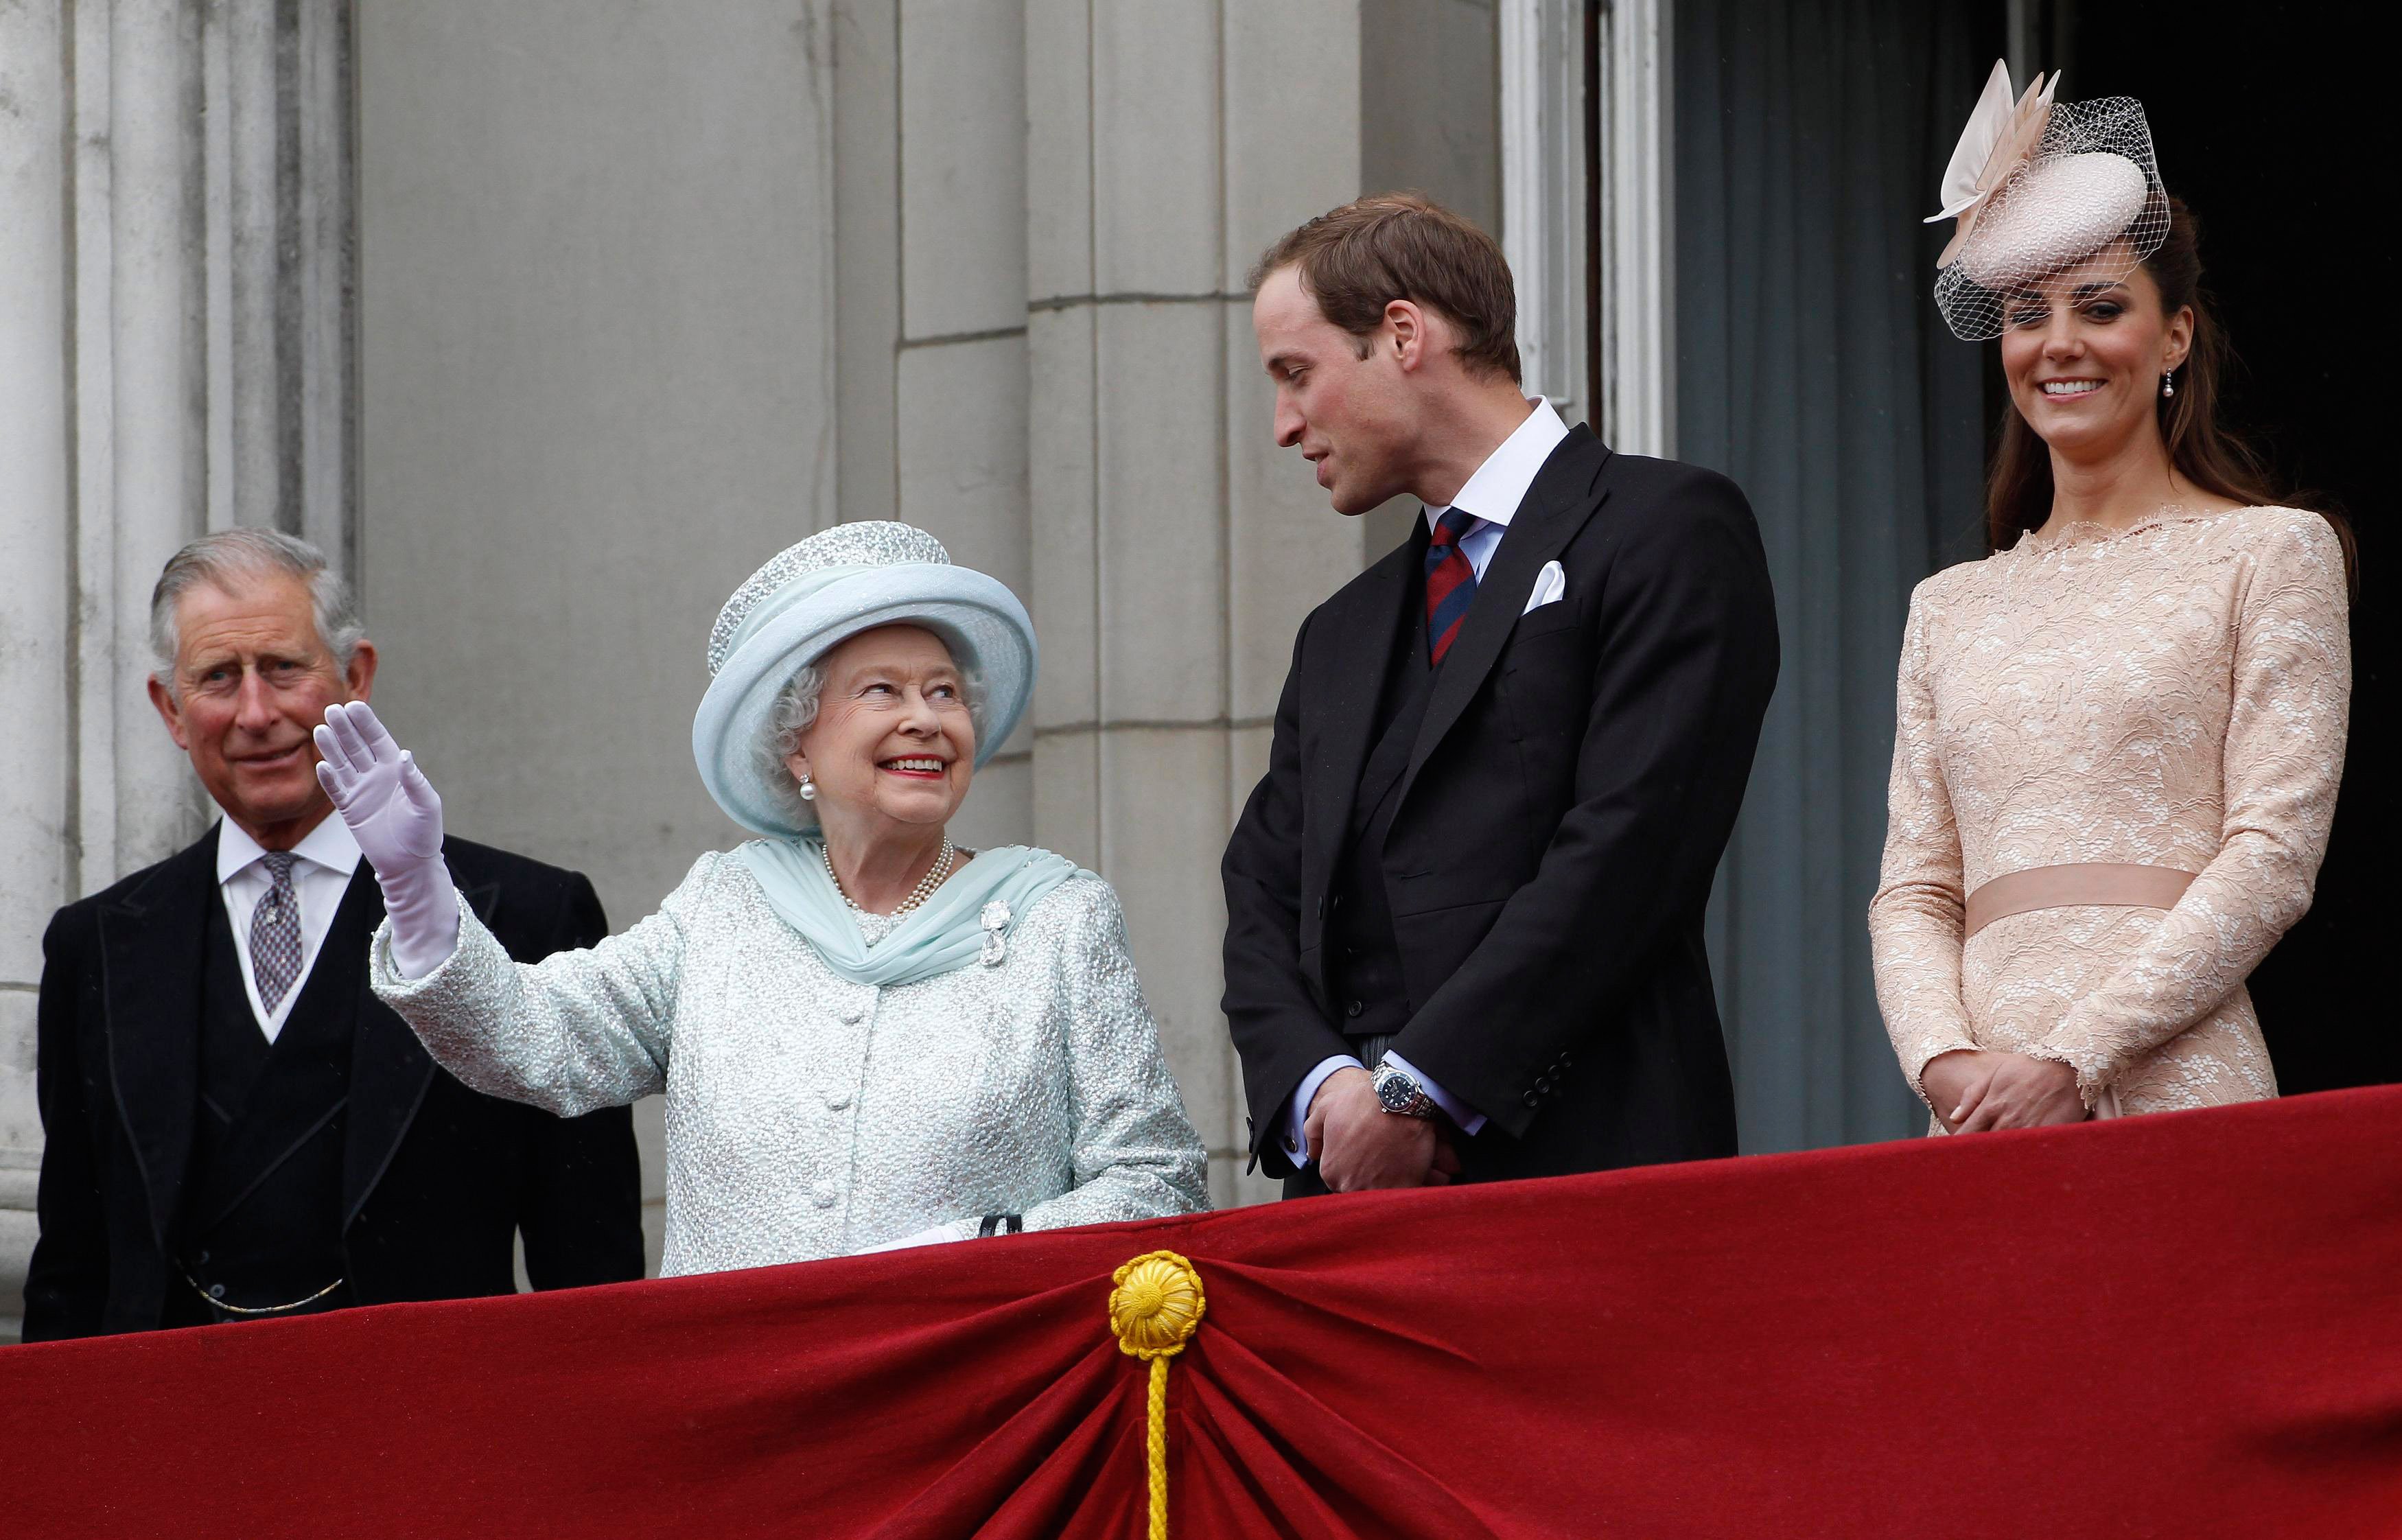 Prinz Charles, Königin Elizabeth II., Prinz William und Kate Middleton auf dem Balkon des Buckingham Palace während des Finales der Feierlichkeiten zum diamantenen Thronjubiläum der Königin am 5. Juni 2012 in London, England ┃Quelle: Getty Images